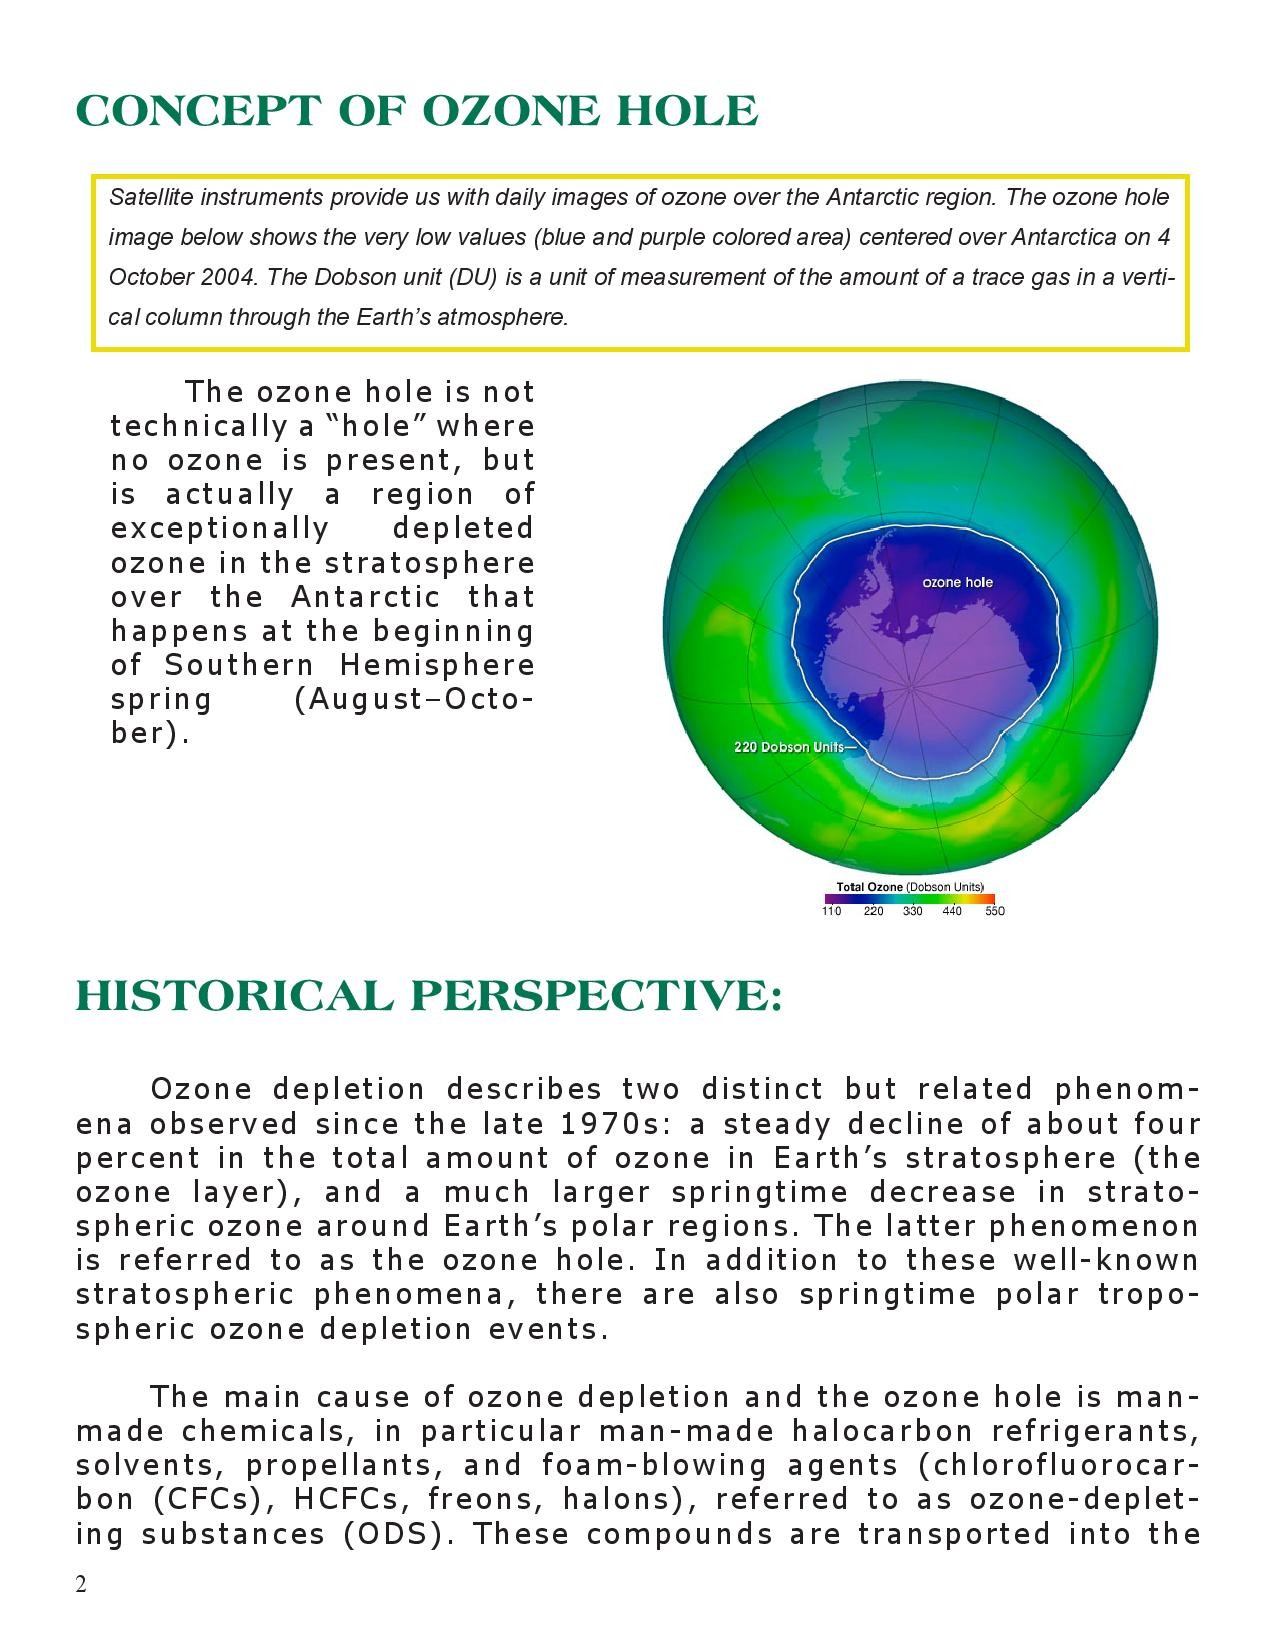 short case study on ozone layer depletion